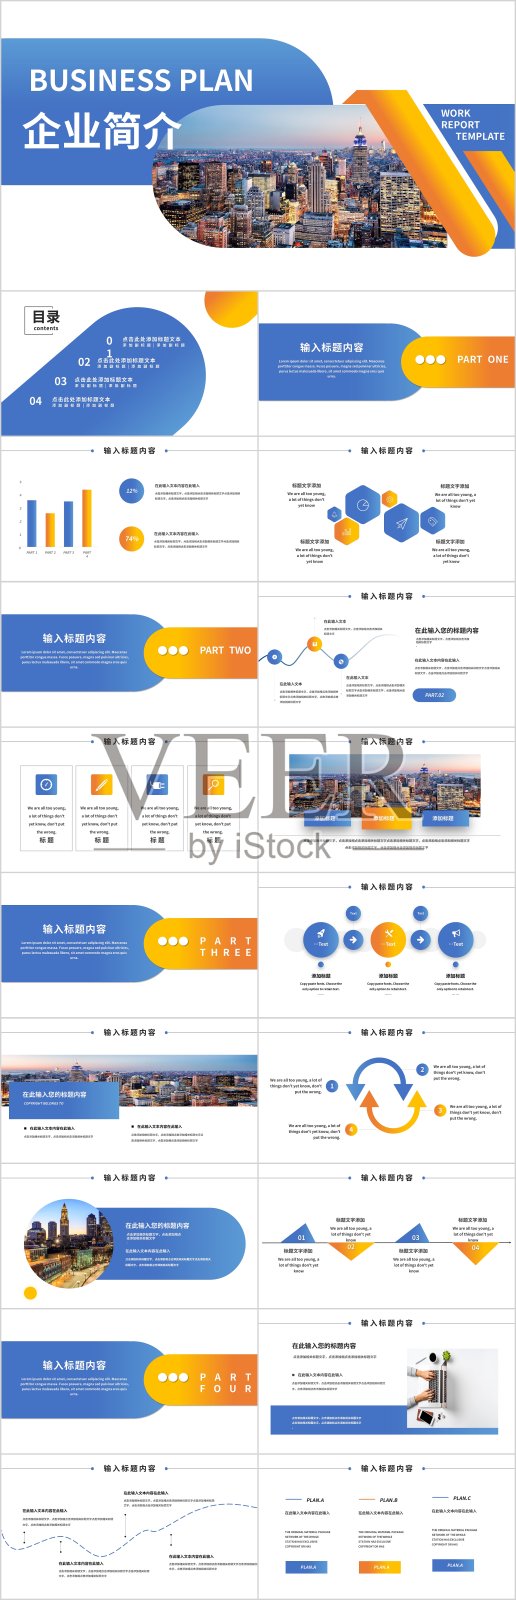 橙蓝色商务企业介绍通用PPT模板4373设计模板素材